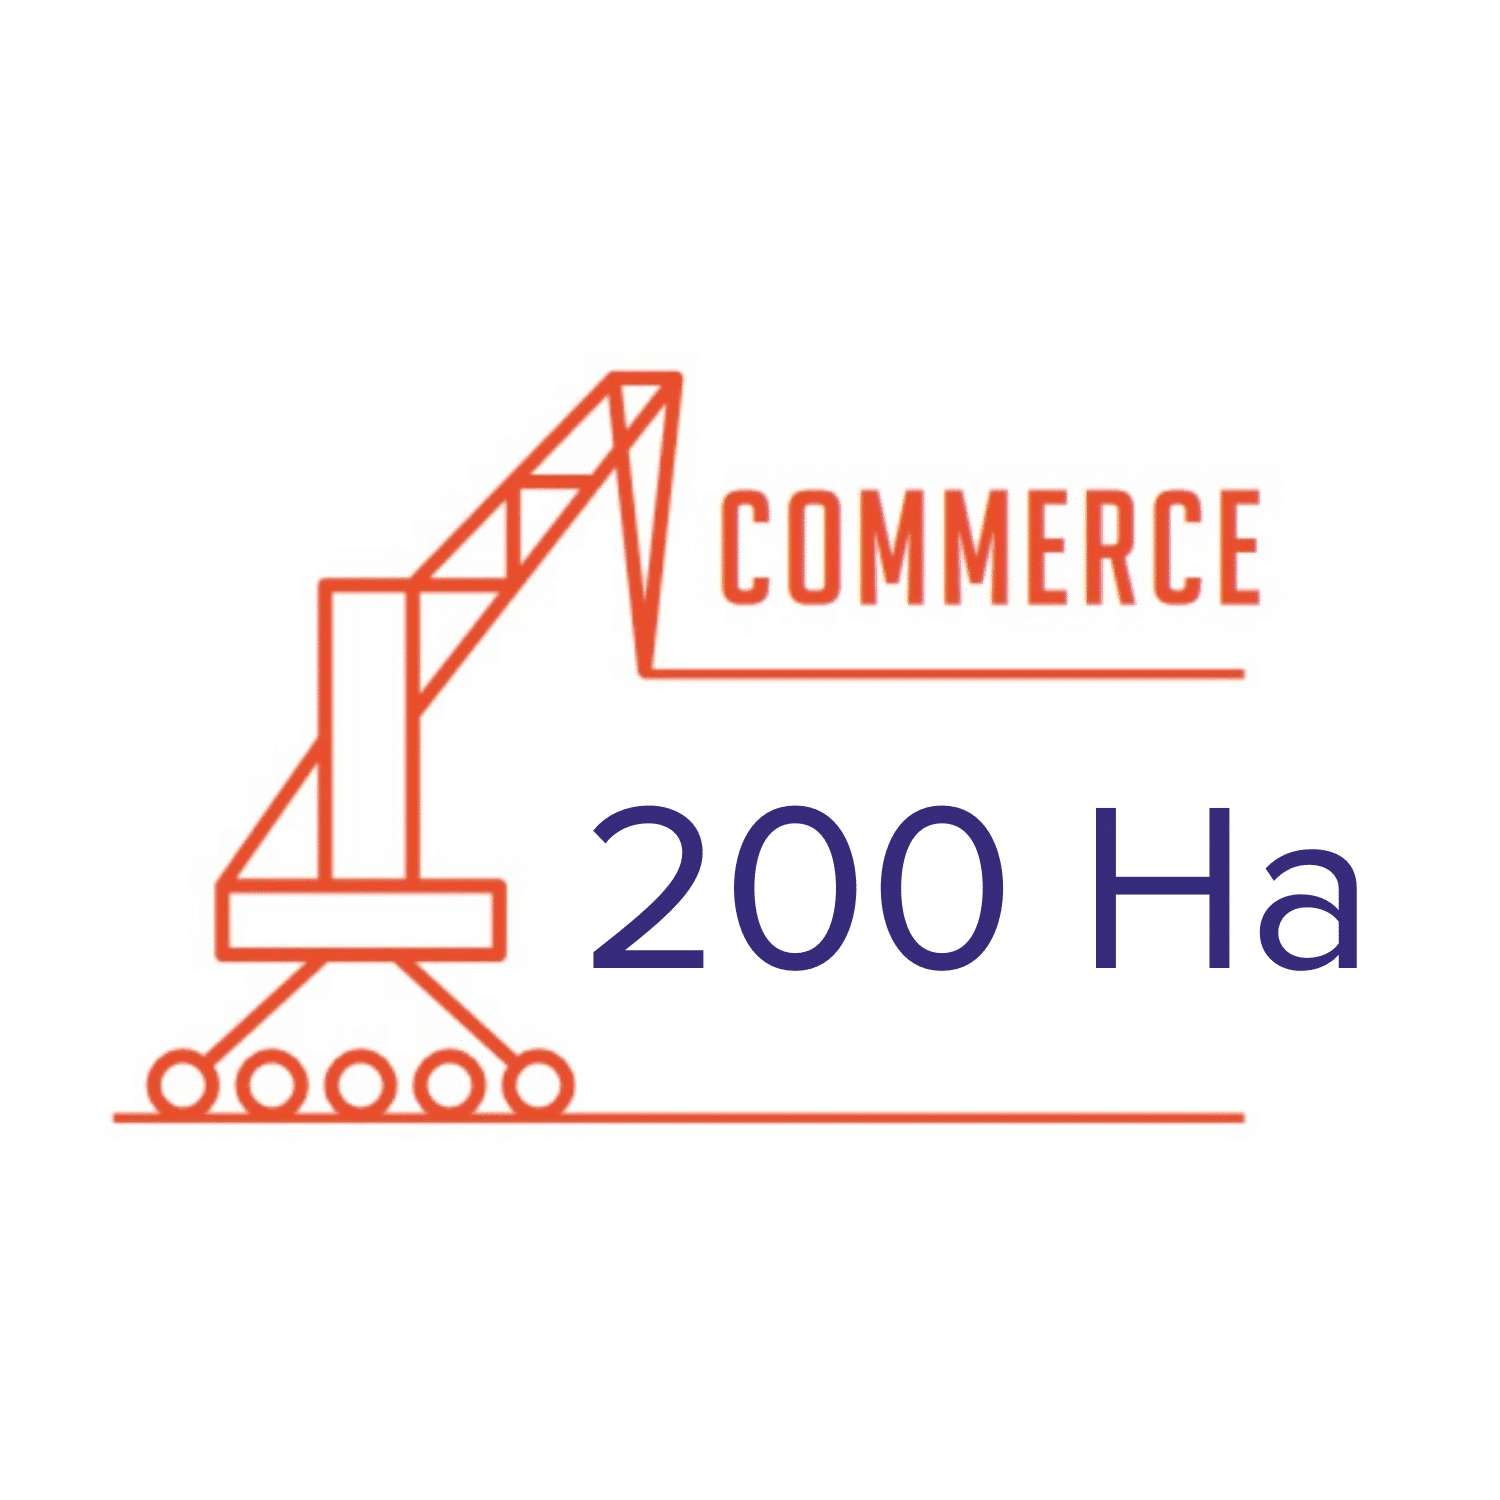 Commerce 200 Ha(1)